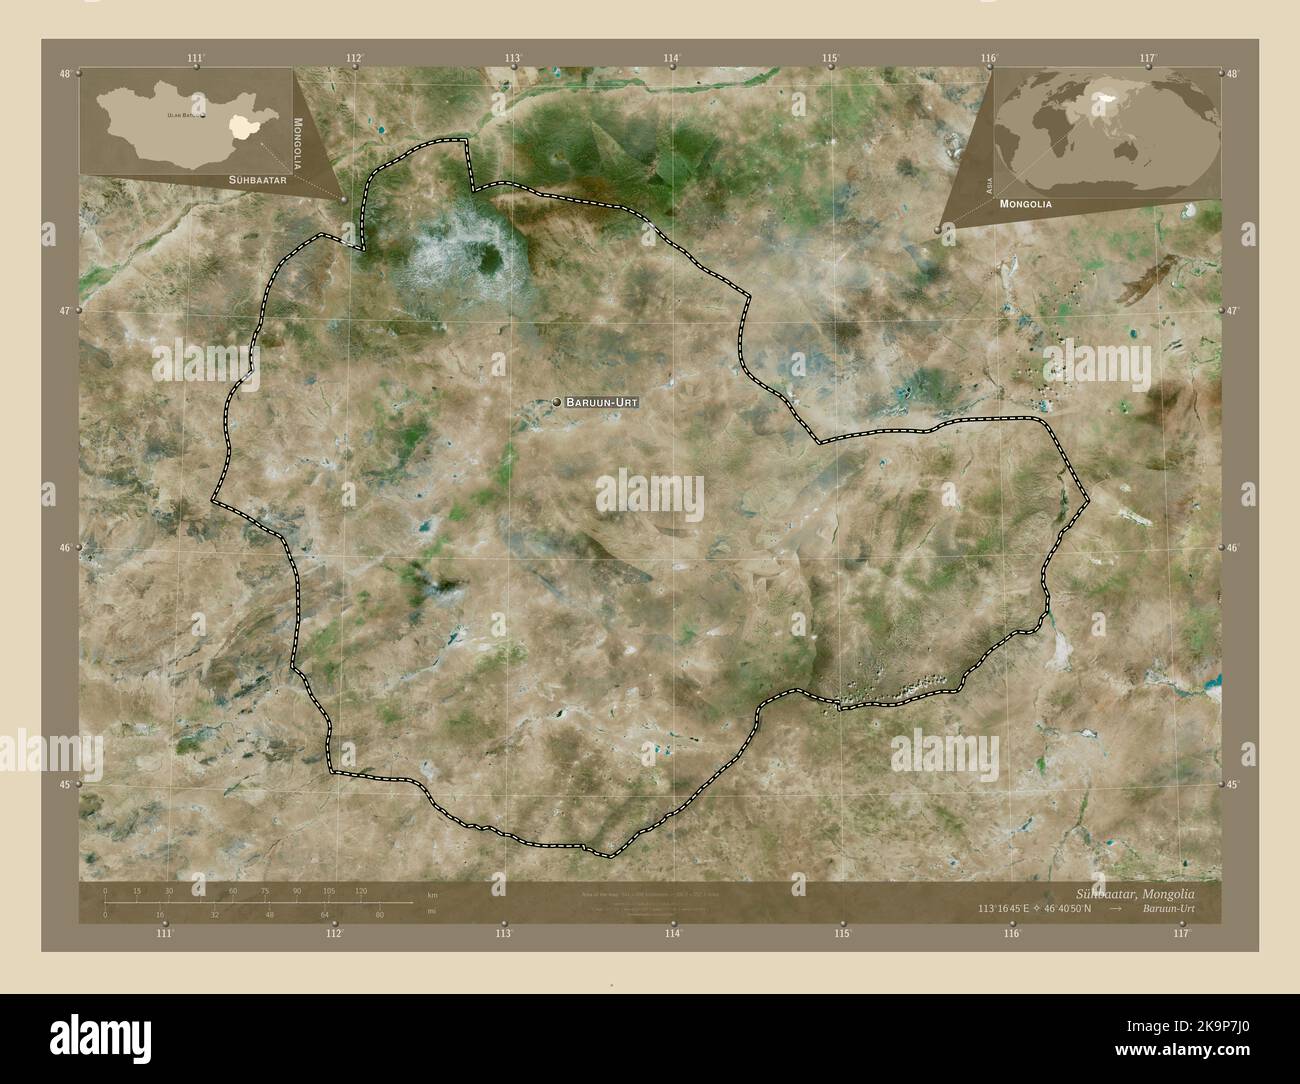 Suhbaatar, province de Mongolie. Carte satellite haute résolution. Lieux et noms des principales villes de la région. Cartes d'emplacement auxiliaire d'angle Banque D'Images